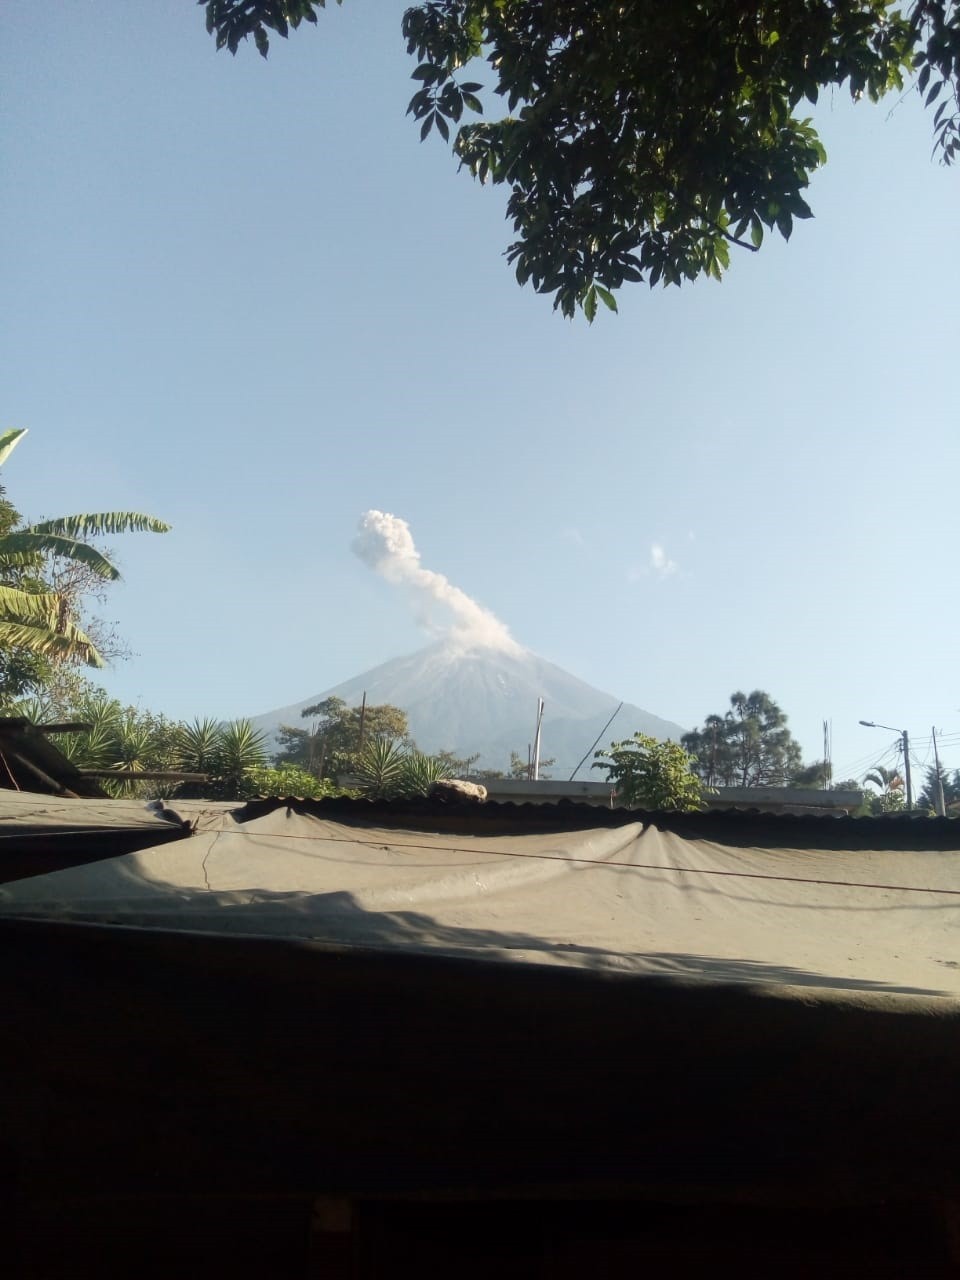 Volcán de Fuego aumenta erupciones y lanza ceniza a comunidades en Guatemala